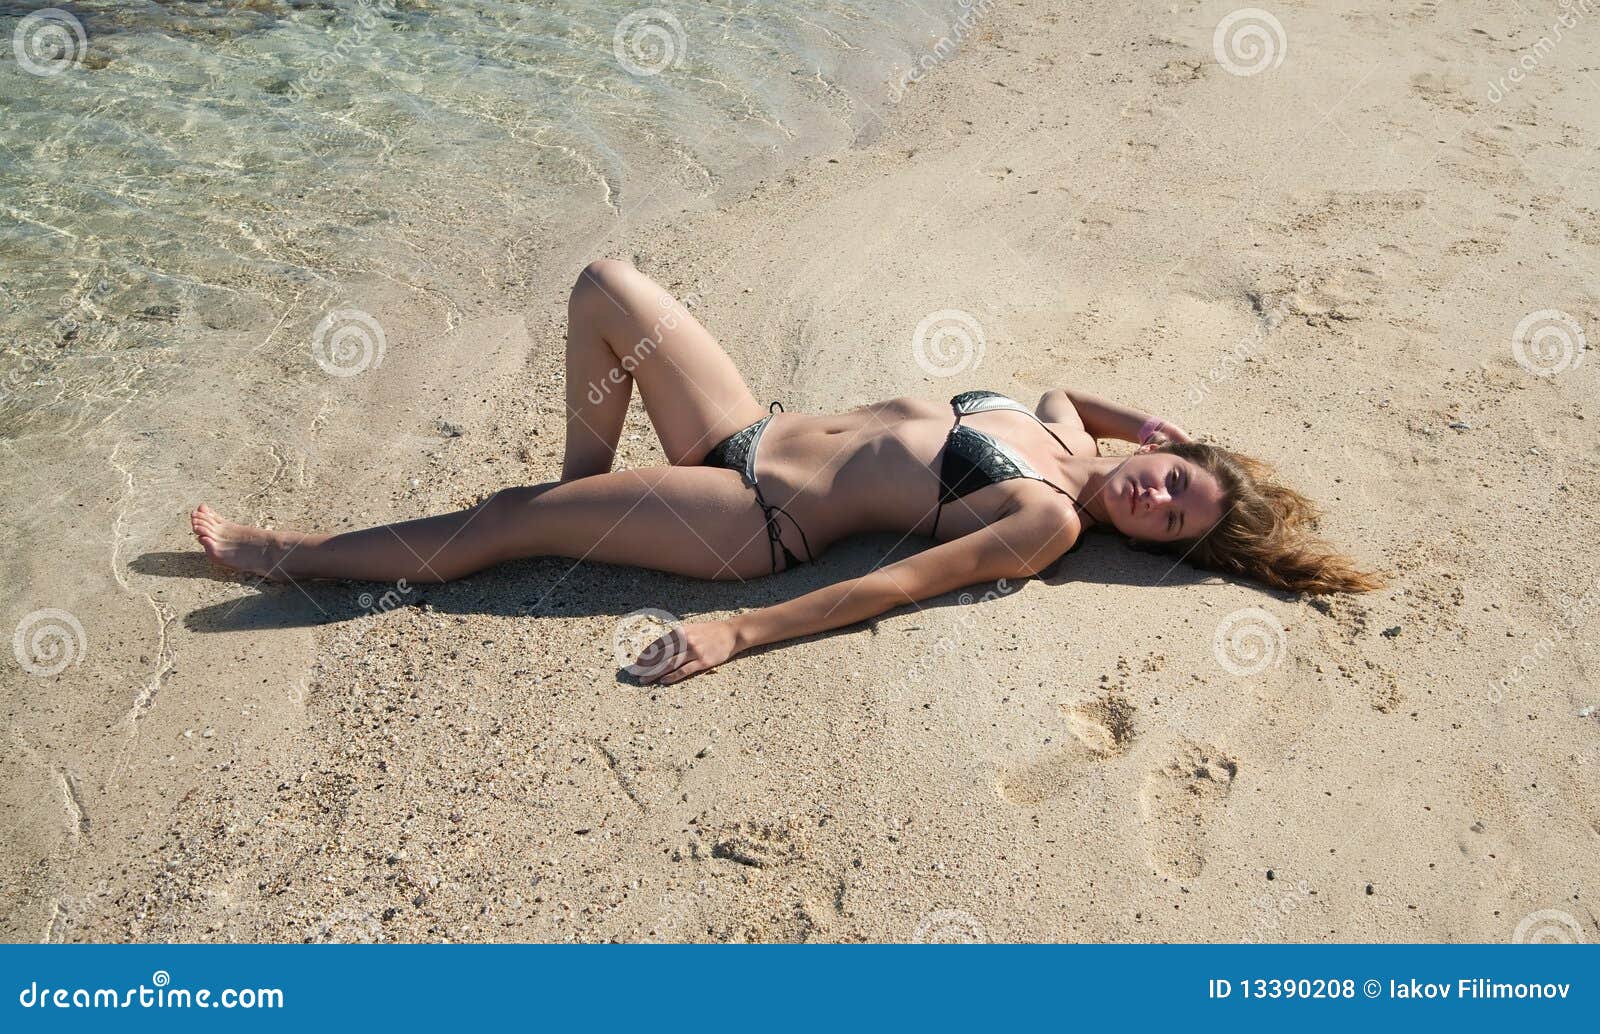 girls indian Free images sunbathing